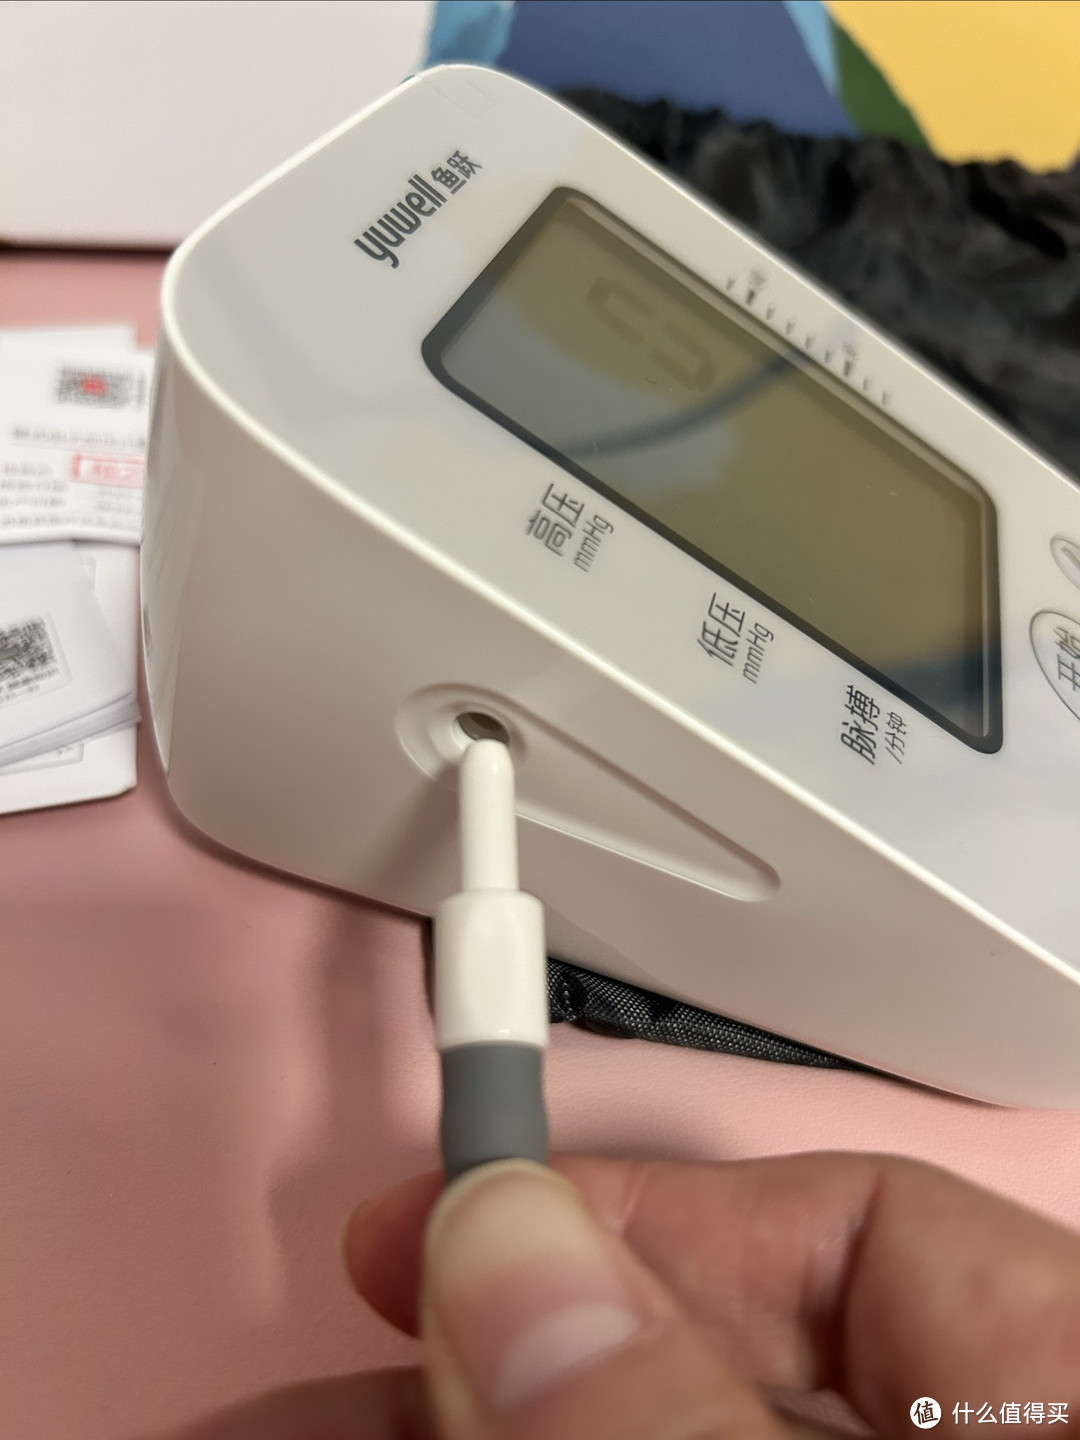 血压计不再是老年人的必备，中青年患者近年来已成上升趋势，家里备一台血压计您觉得有必要吗？